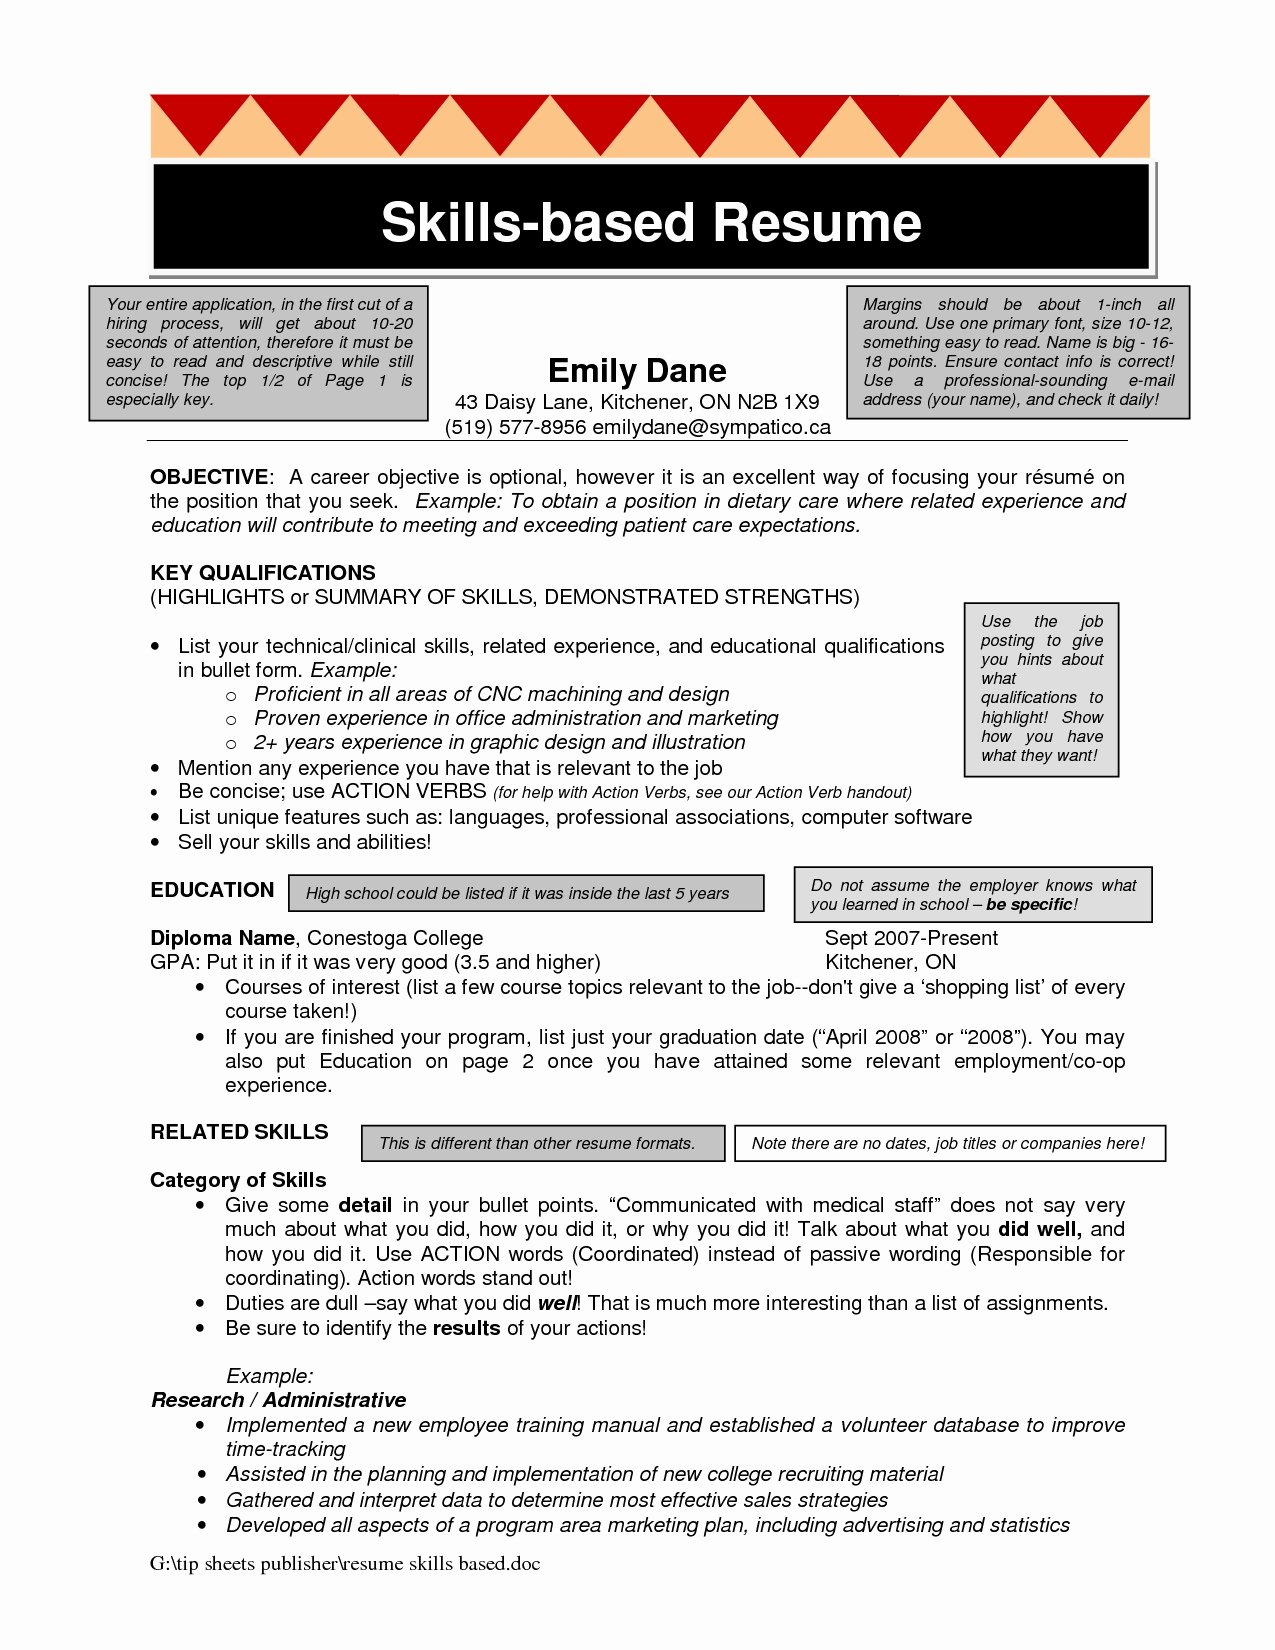 Skills Based Resume Template